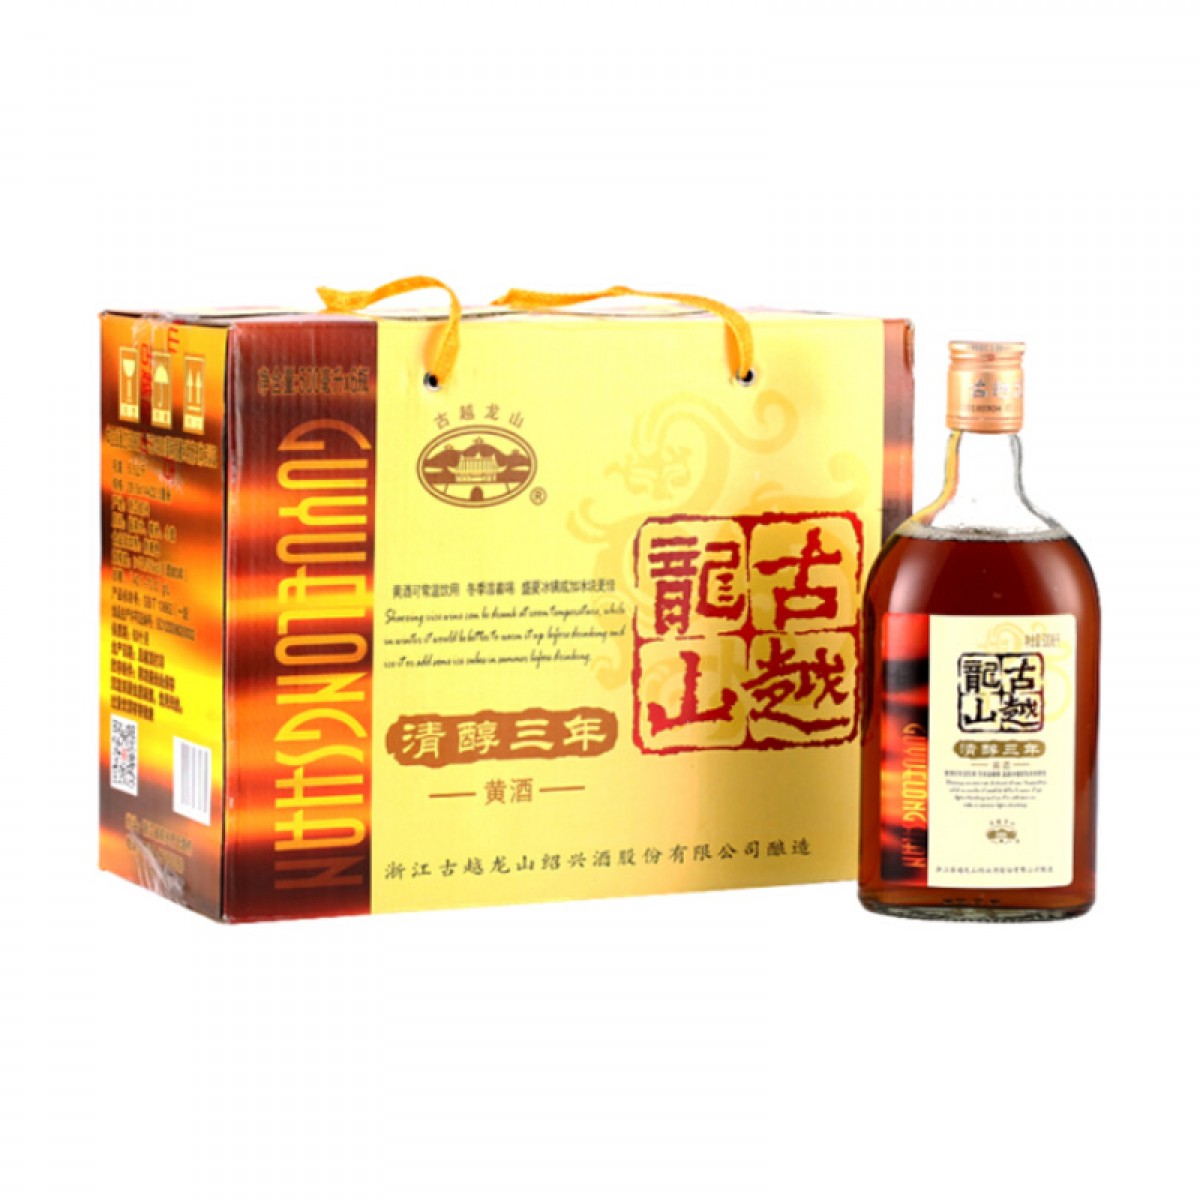 古越龙山 绍兴黄酒 花雕酒糯米酒 清醇三年 半甜型 500mlX6瓶 整箱装